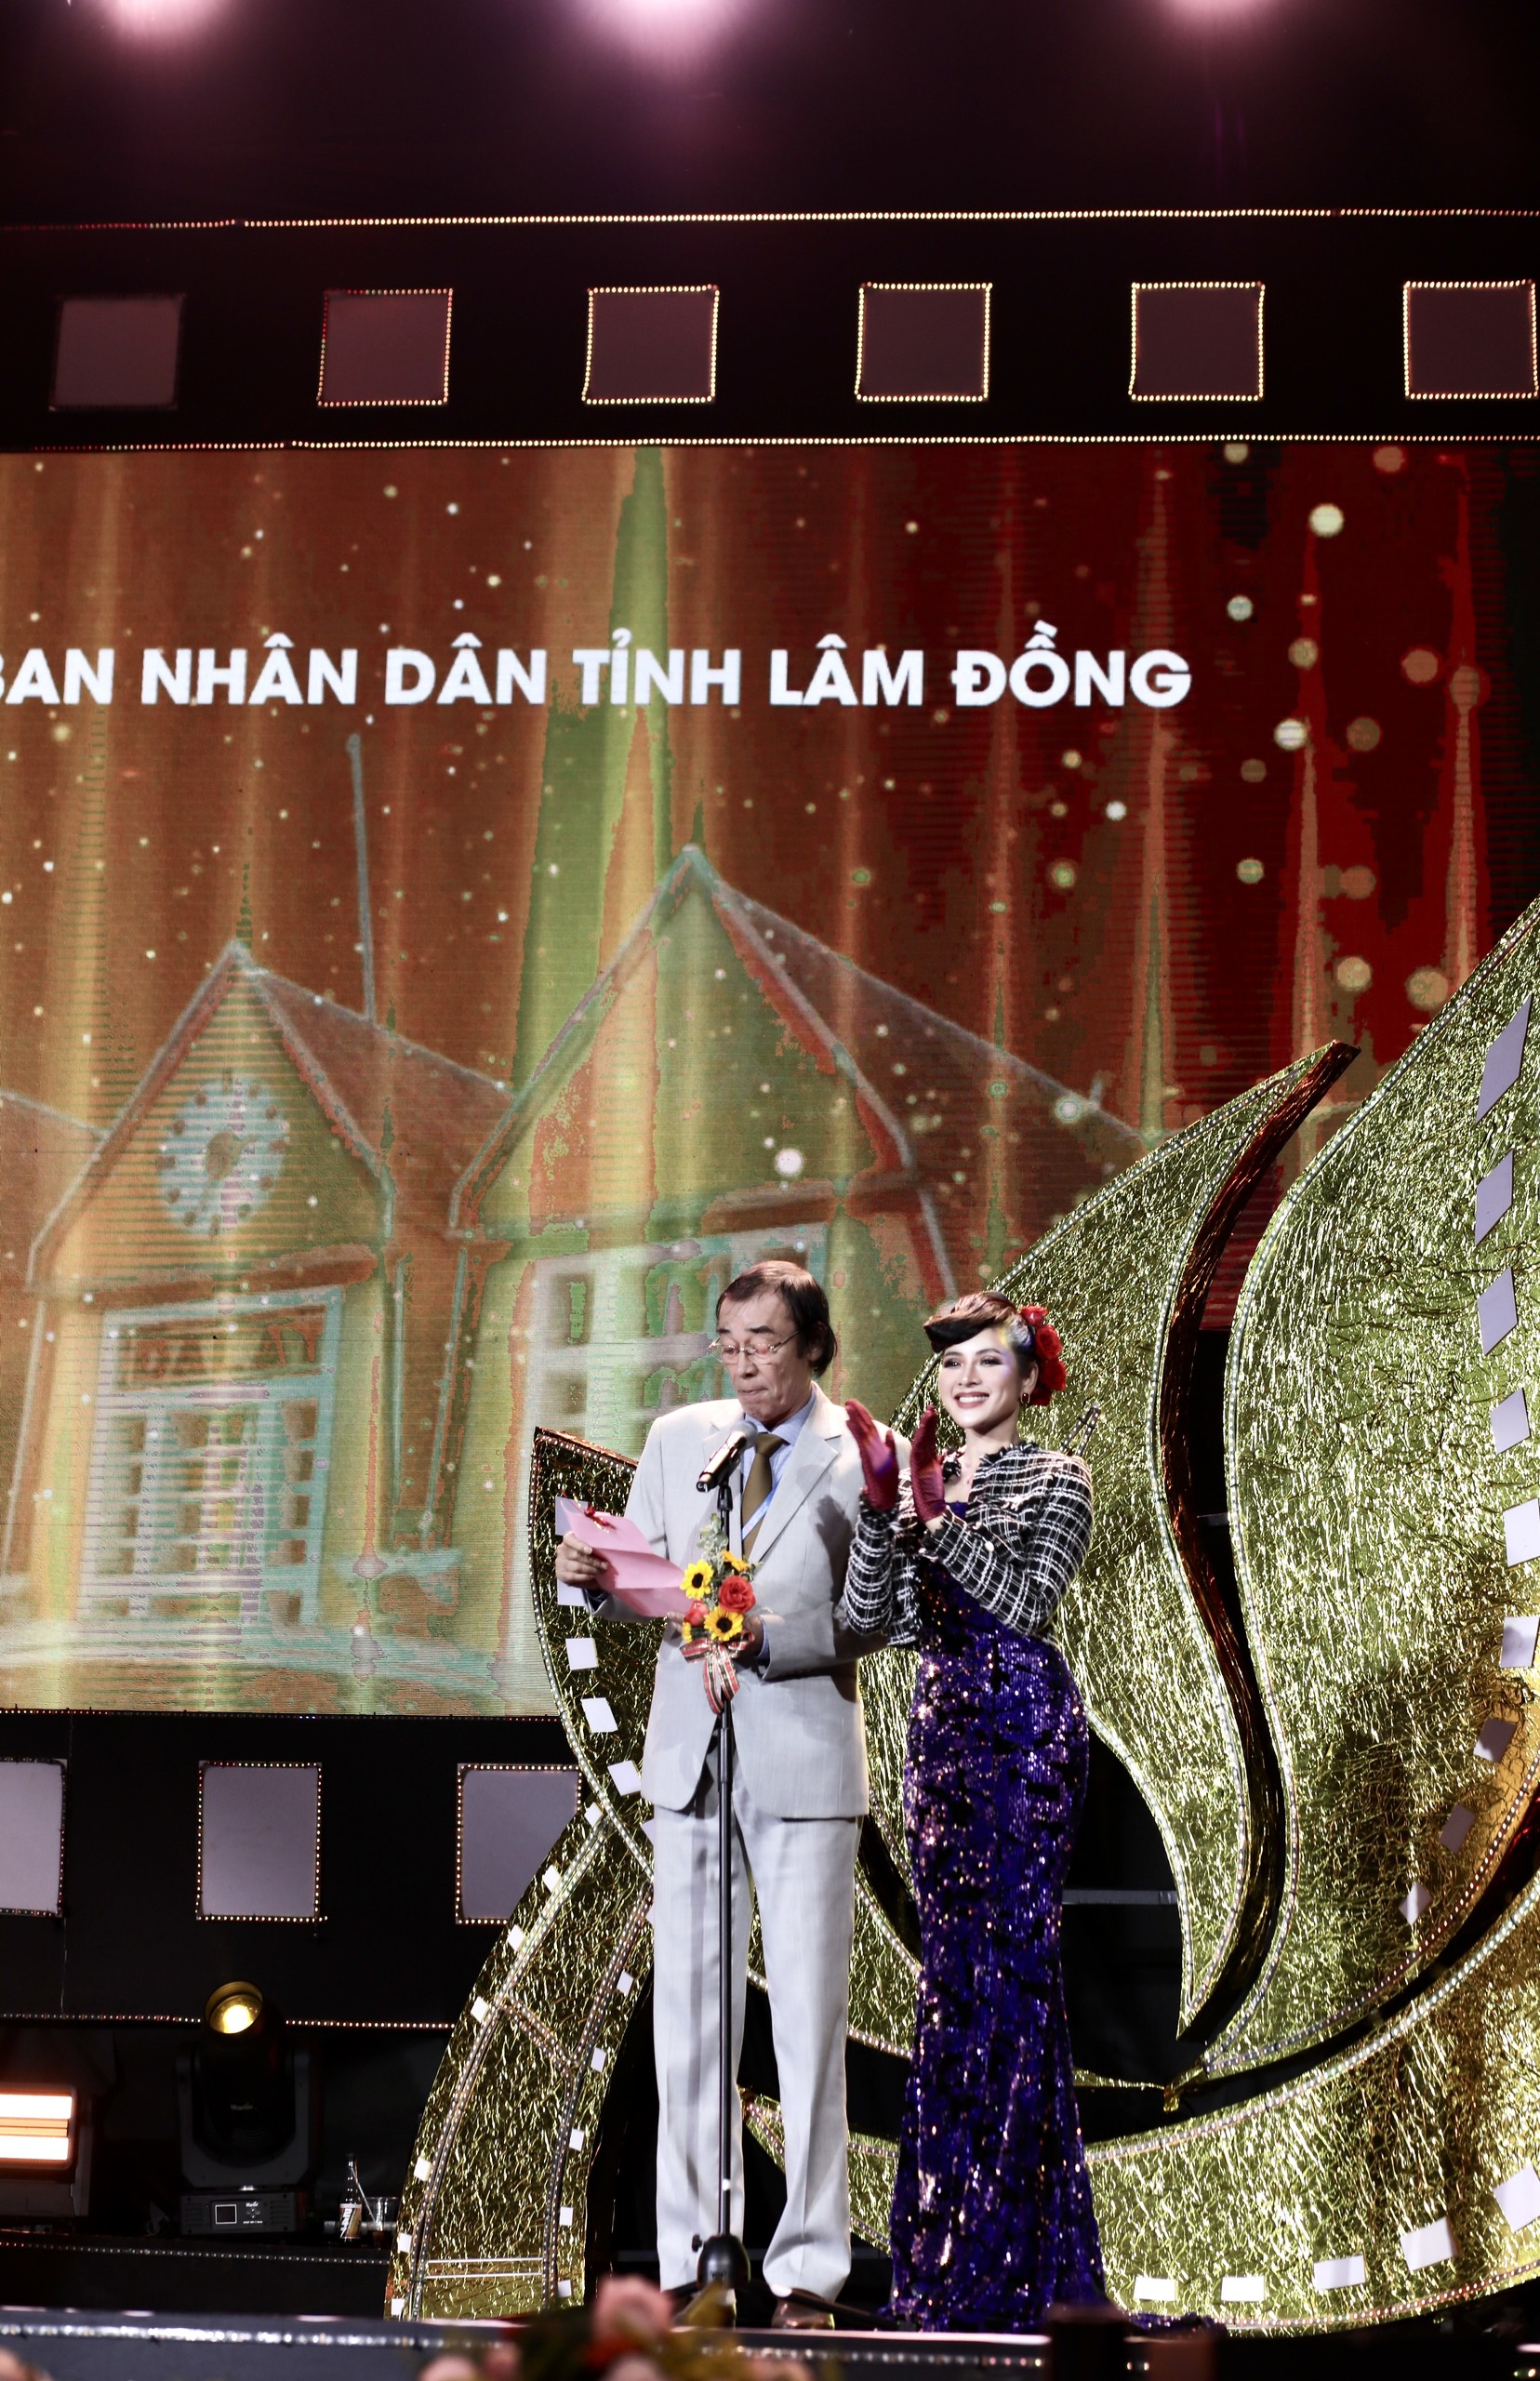 Thái Nhã Vân đọ sắc cùng dàn mỹ nhân Việt tại Liên hoan phim Việt Nam - ảnh 3